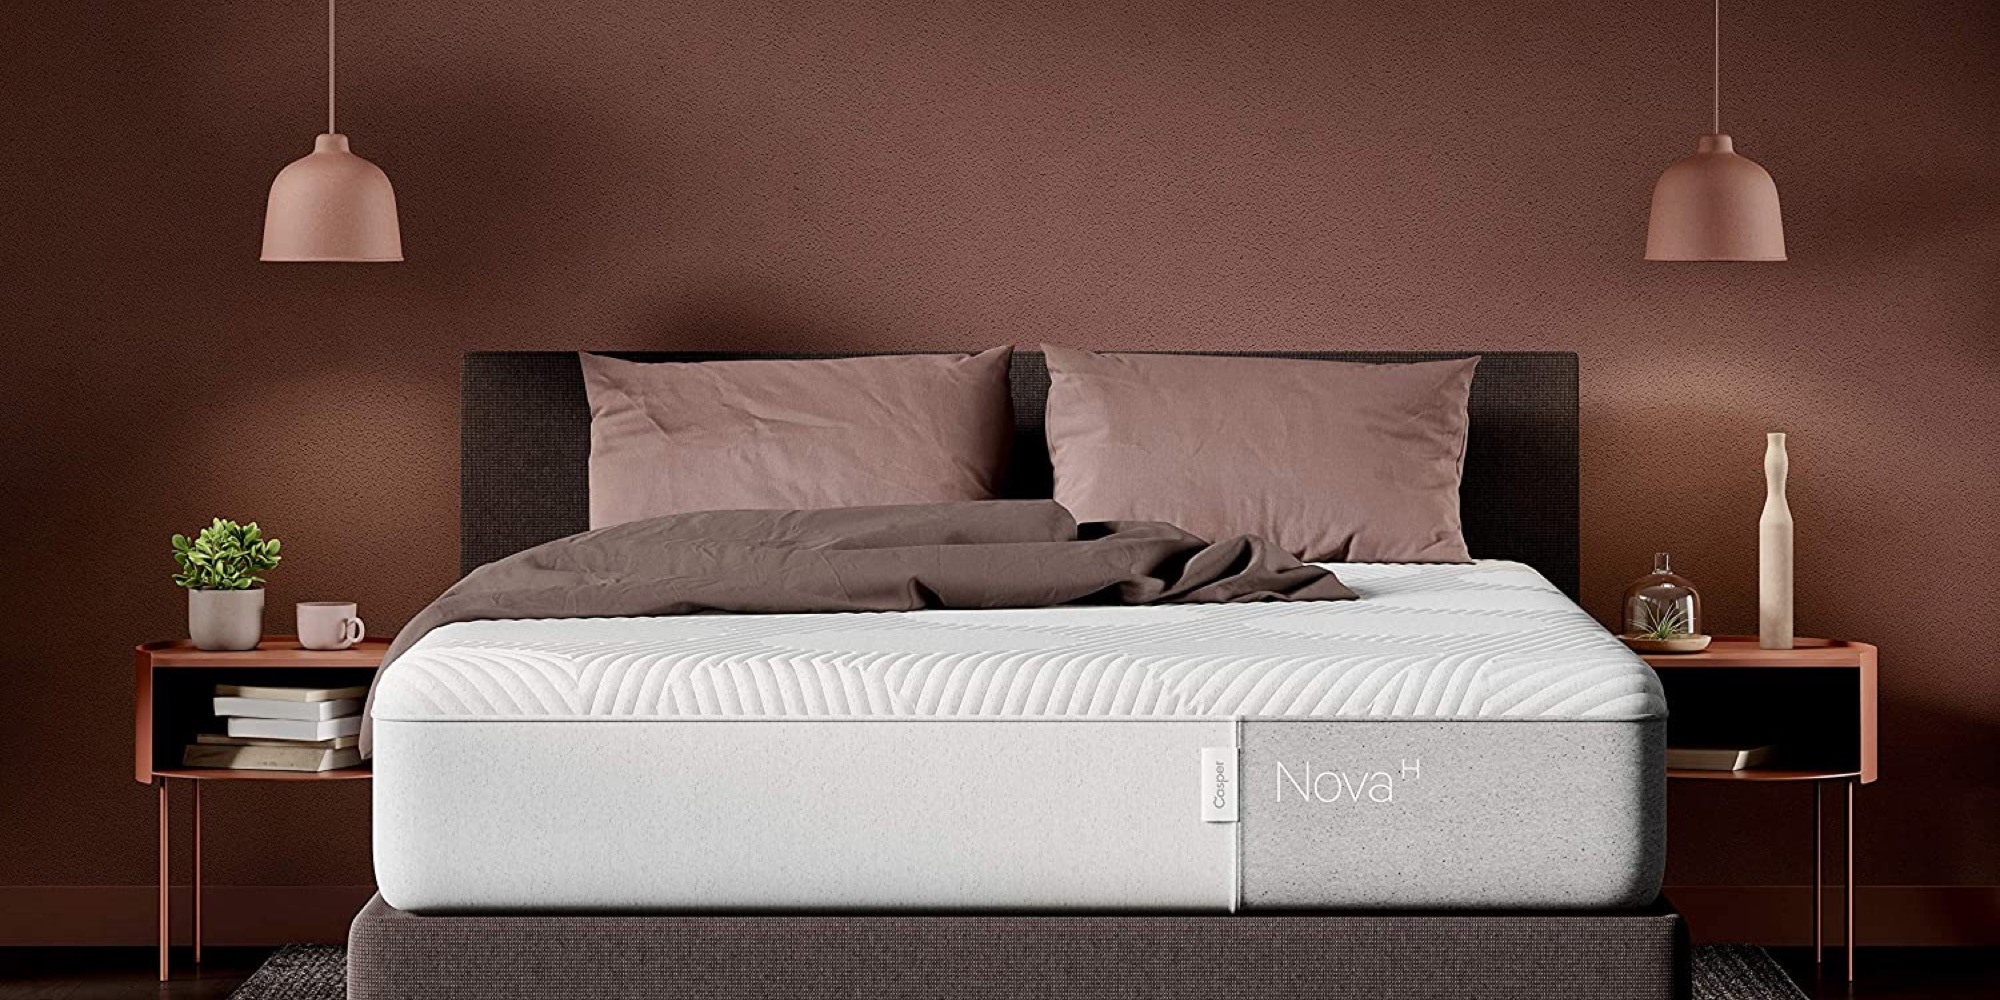 beds for casper mattress